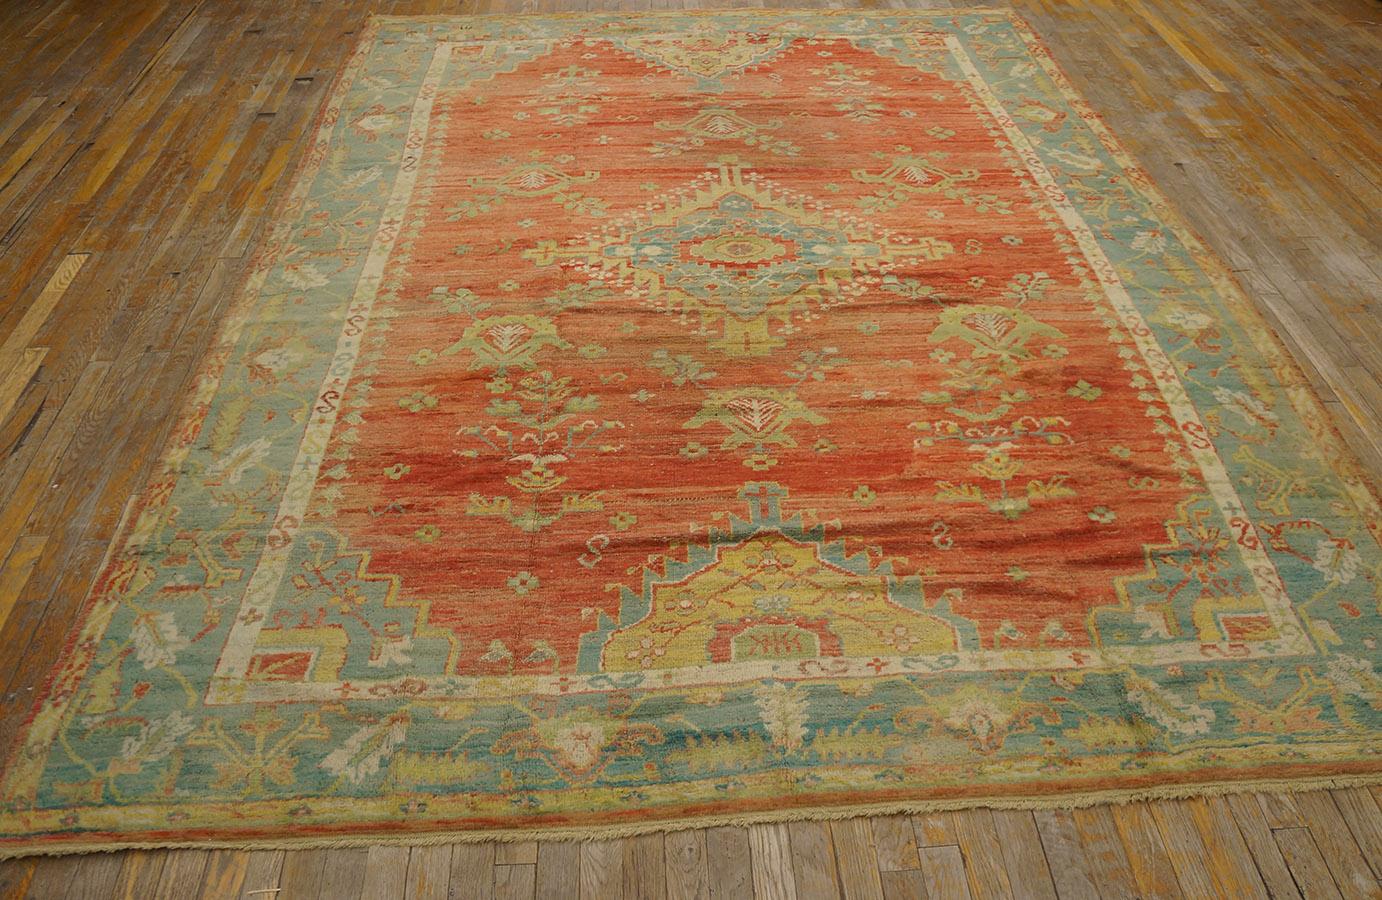 Antique Turkish Oushak rug, size: 7' 9'' x 10' 0''.